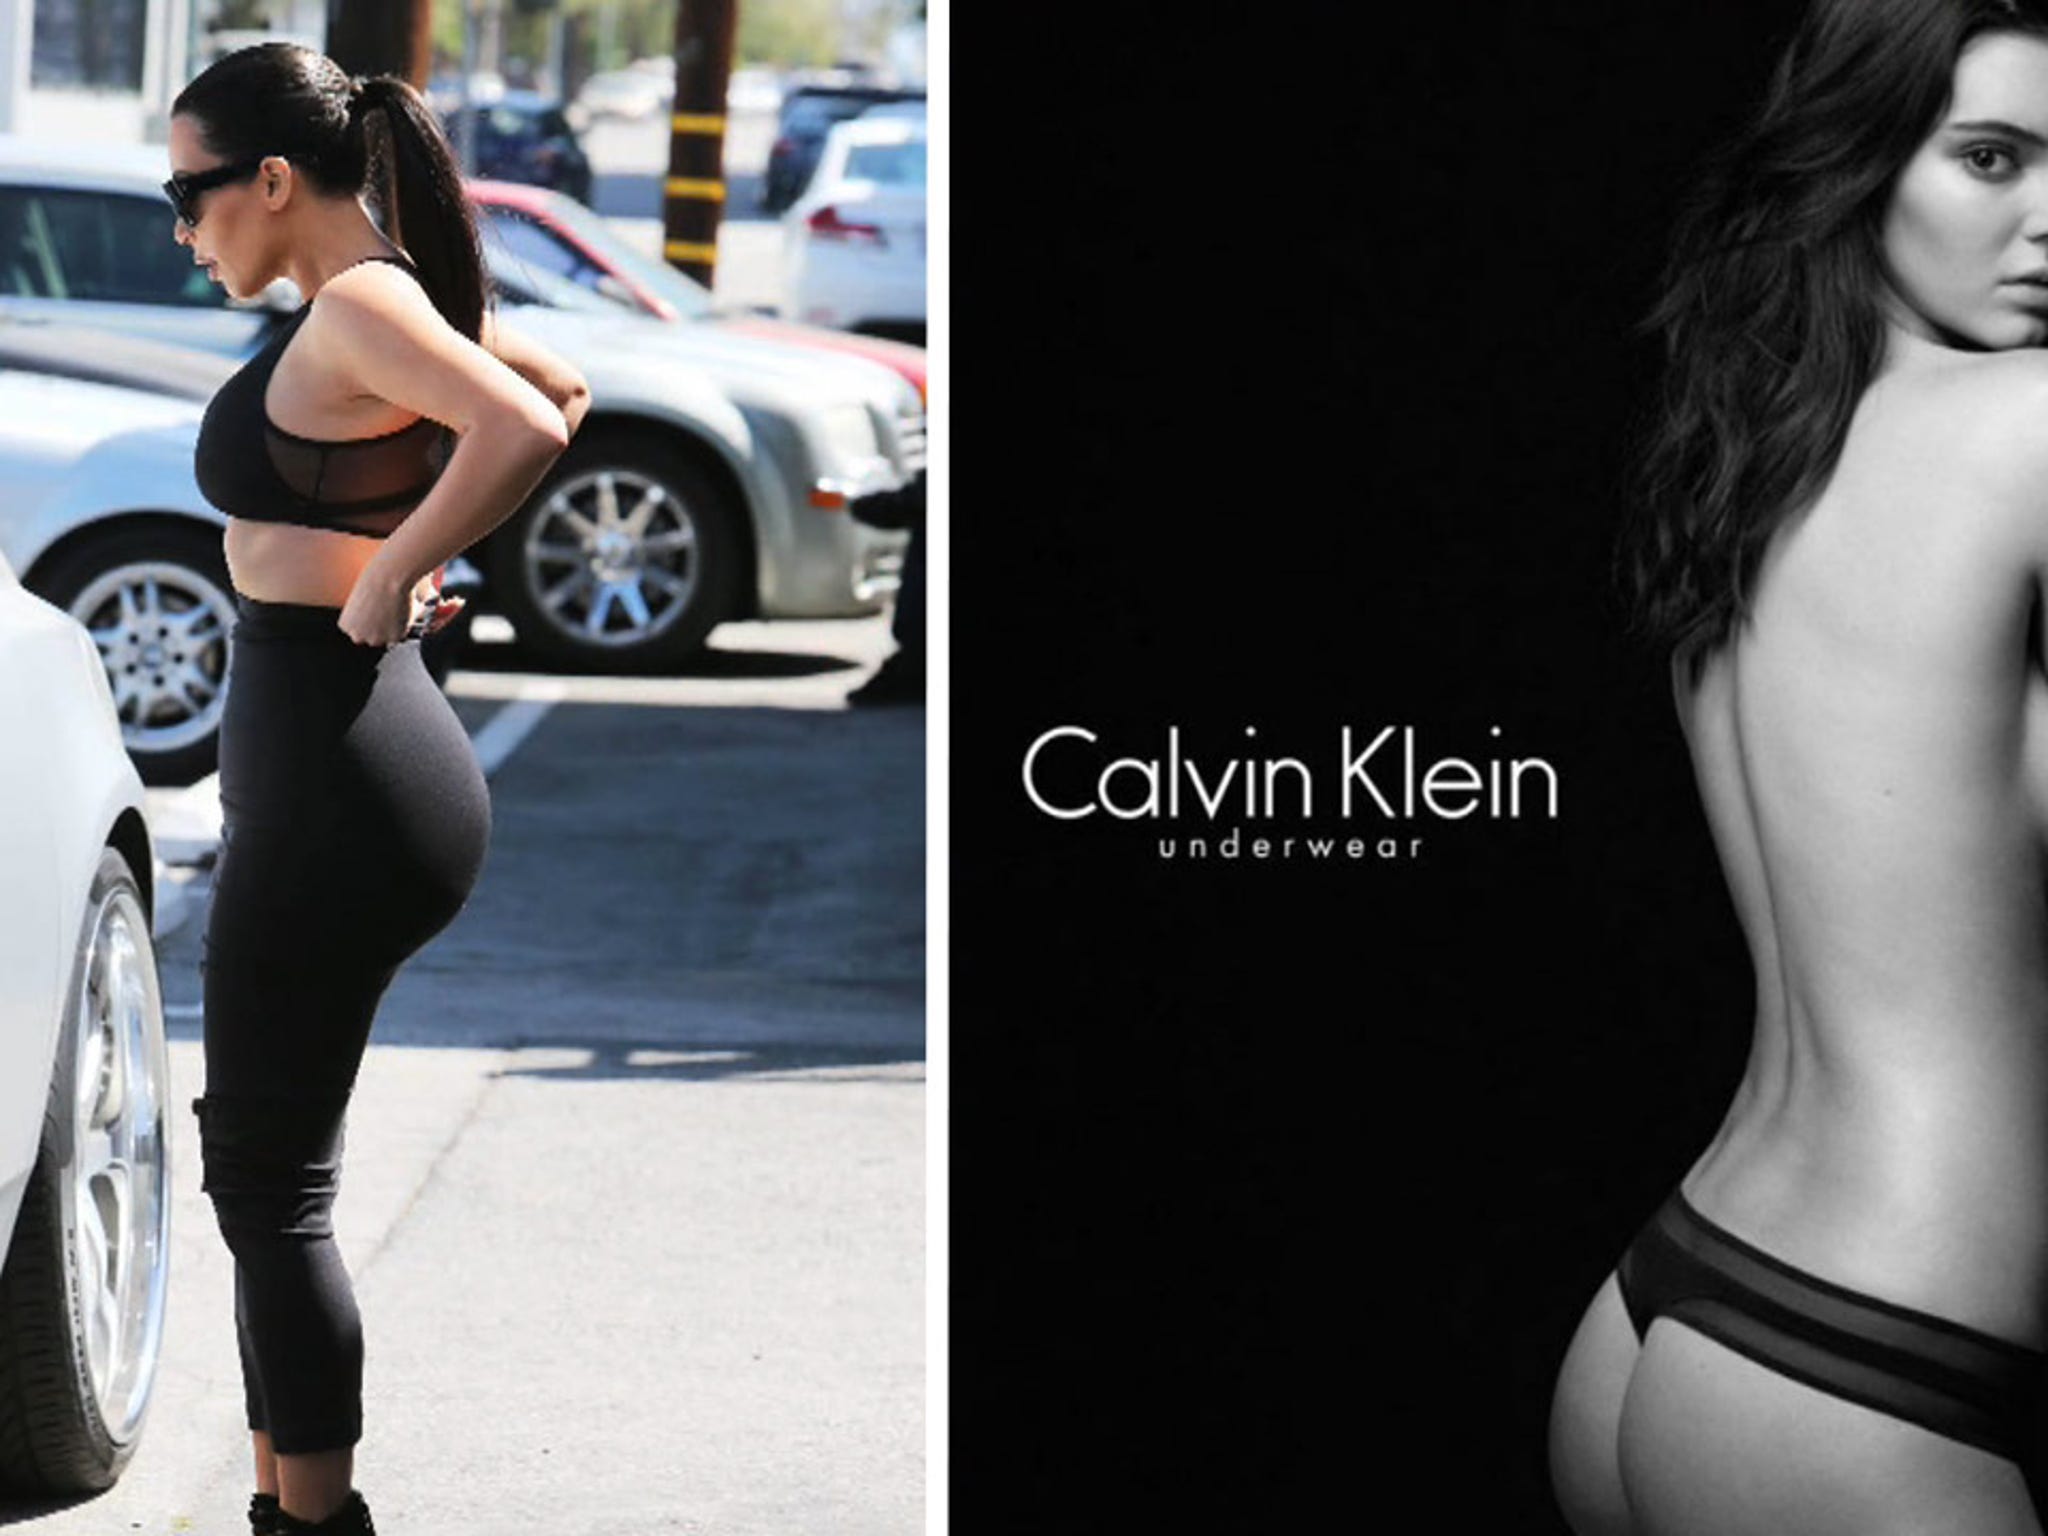 Kendall Models Sexy Calvin Klein Underwear & Bra!